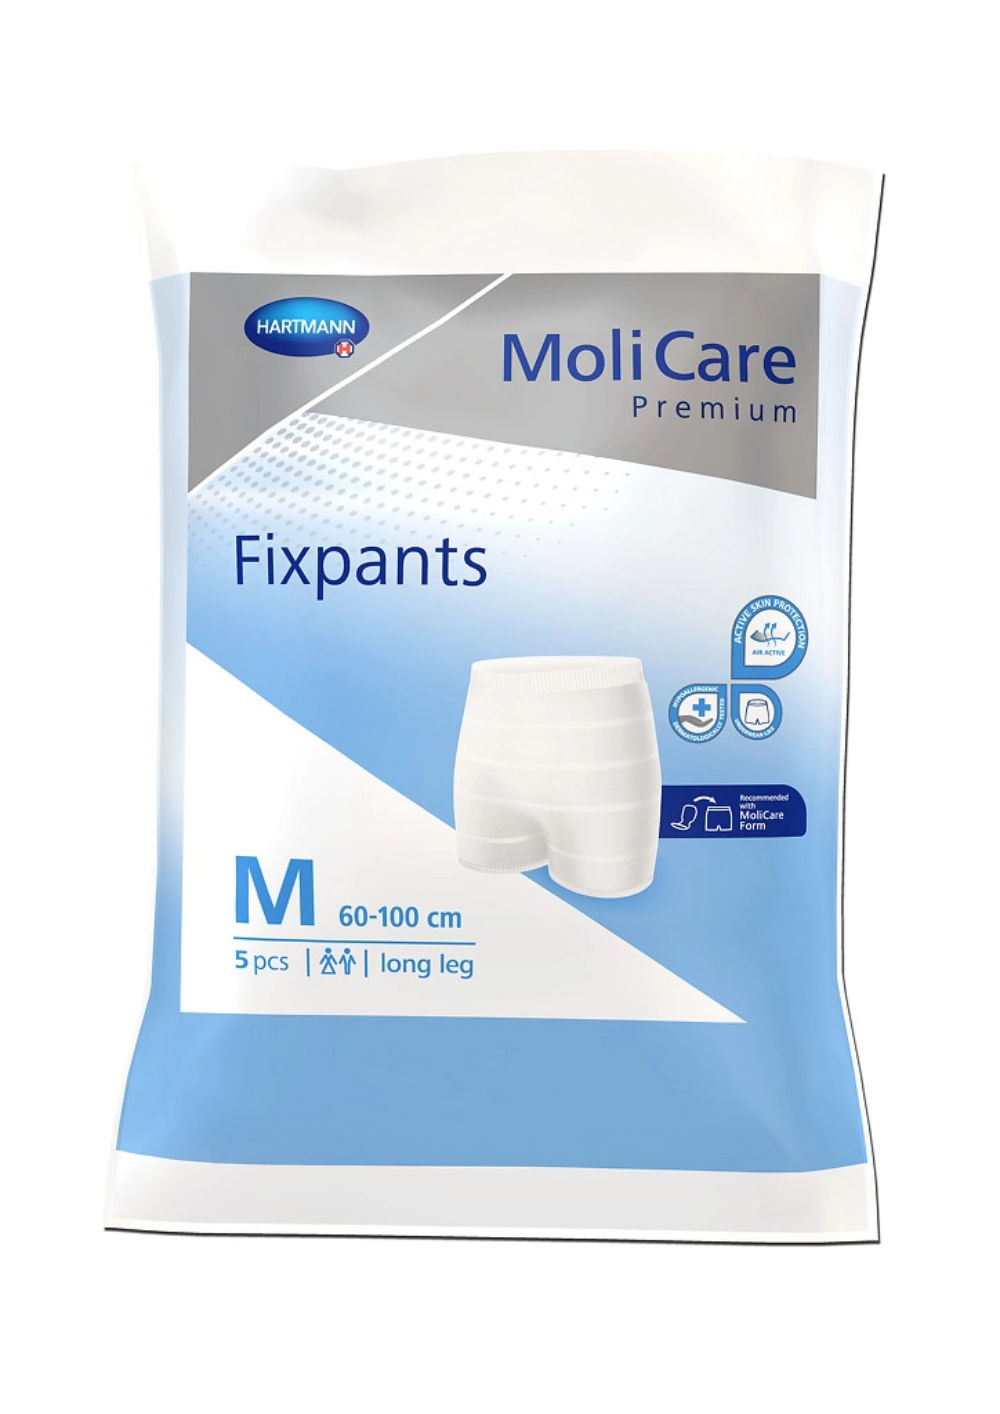 MoliCare® Fixpants Premium 